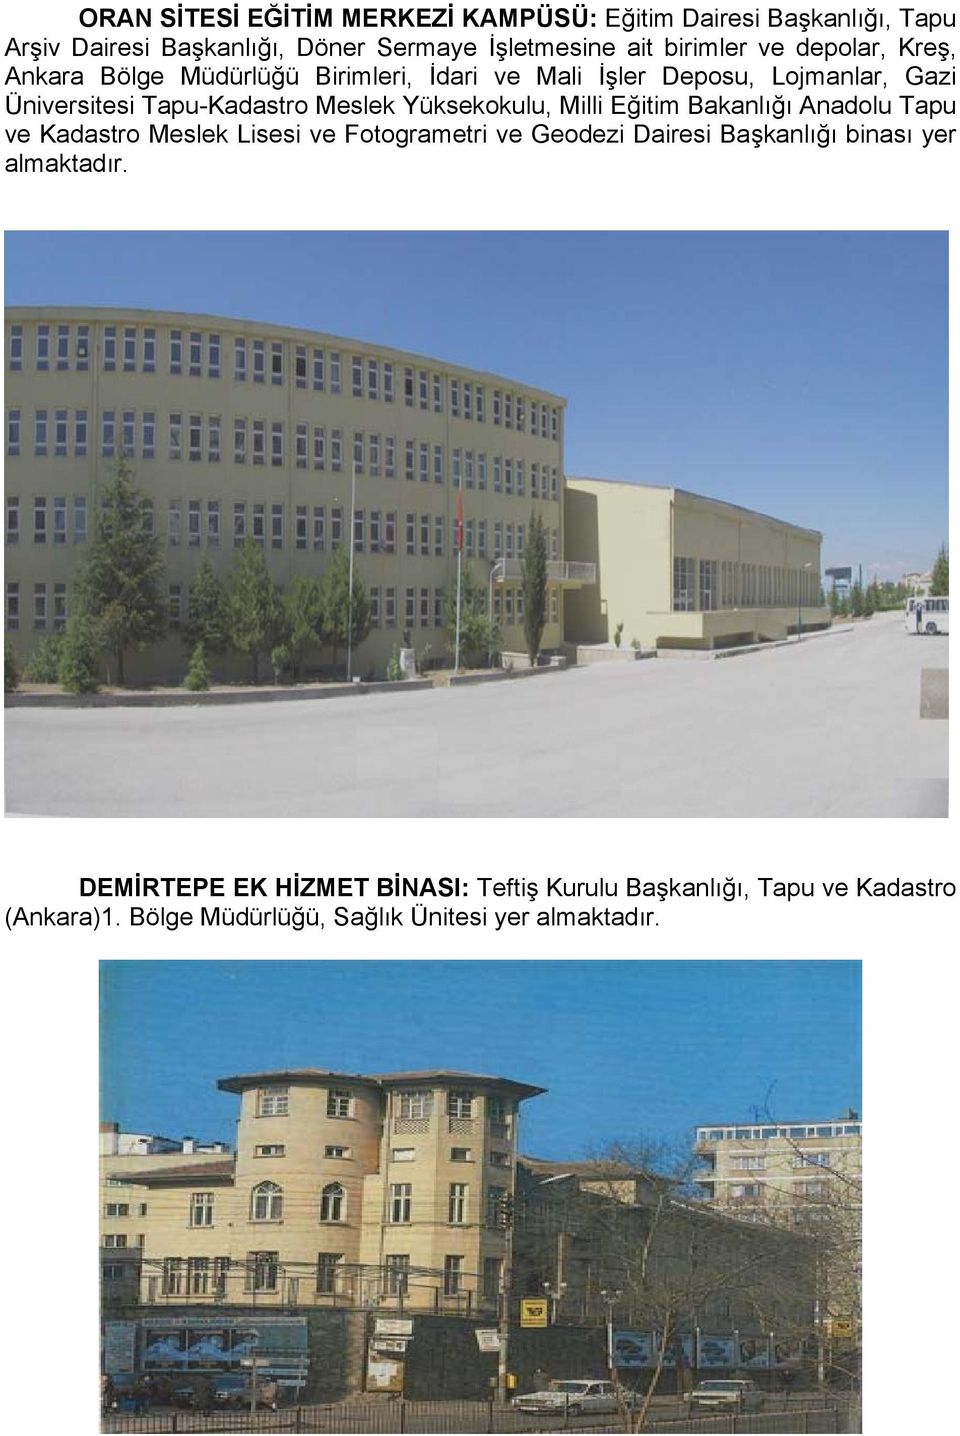 Yüksekokulu, Milli Eğitim Bakanlığı Anadolu Tapu ve Kadastro Meslek Lisesi ve Fotogrametri ve Geodezi Dairesi Başkanlığı binası yer